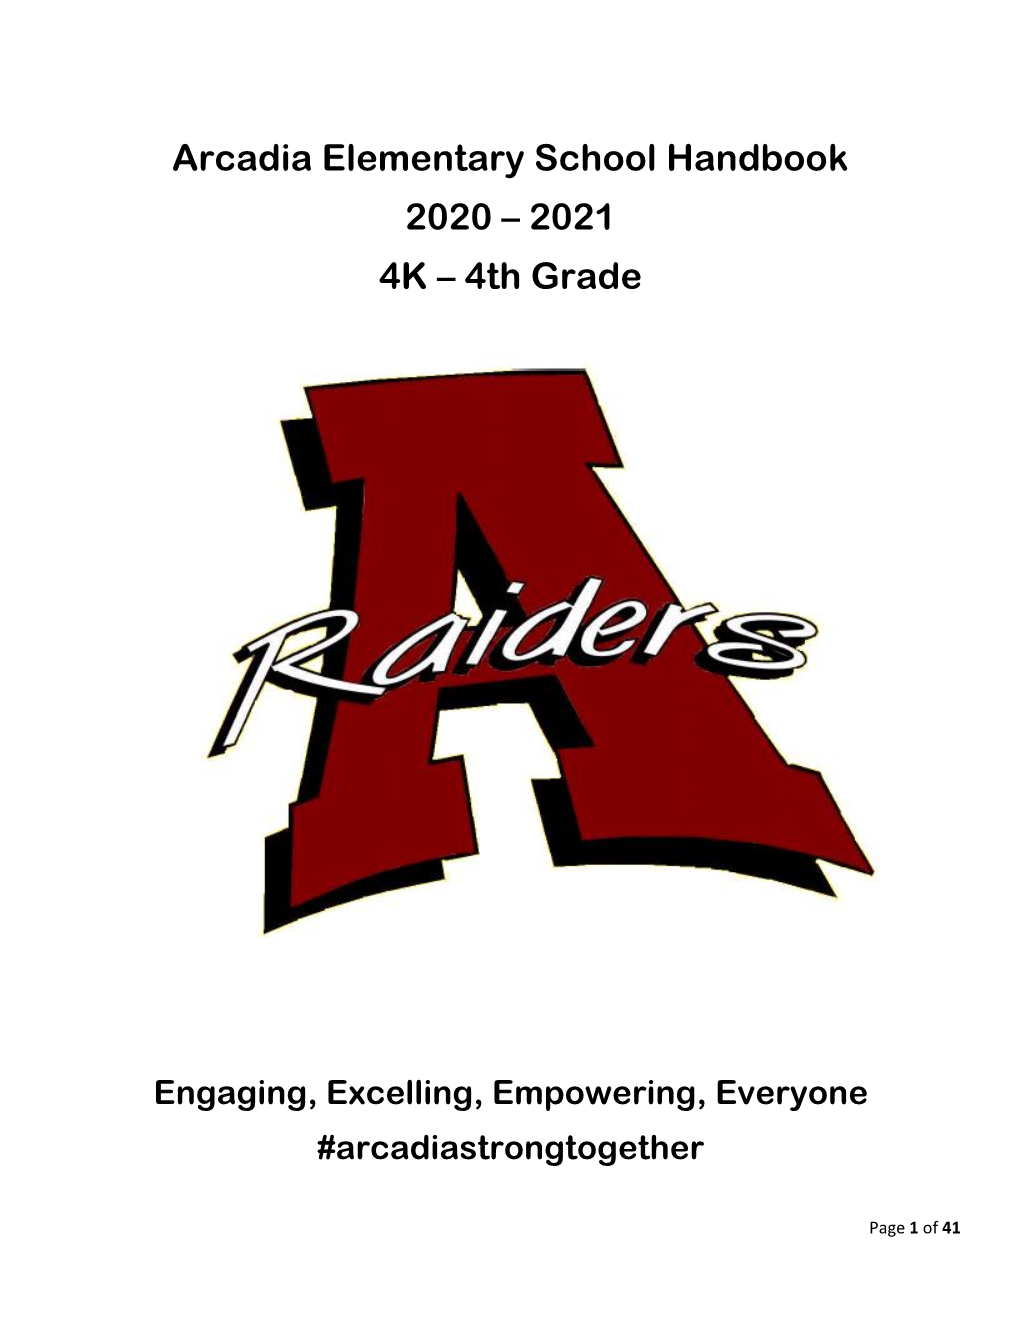 Arcadia Elementary School Handbook 2020 – 2021 4K – 4Th Grade